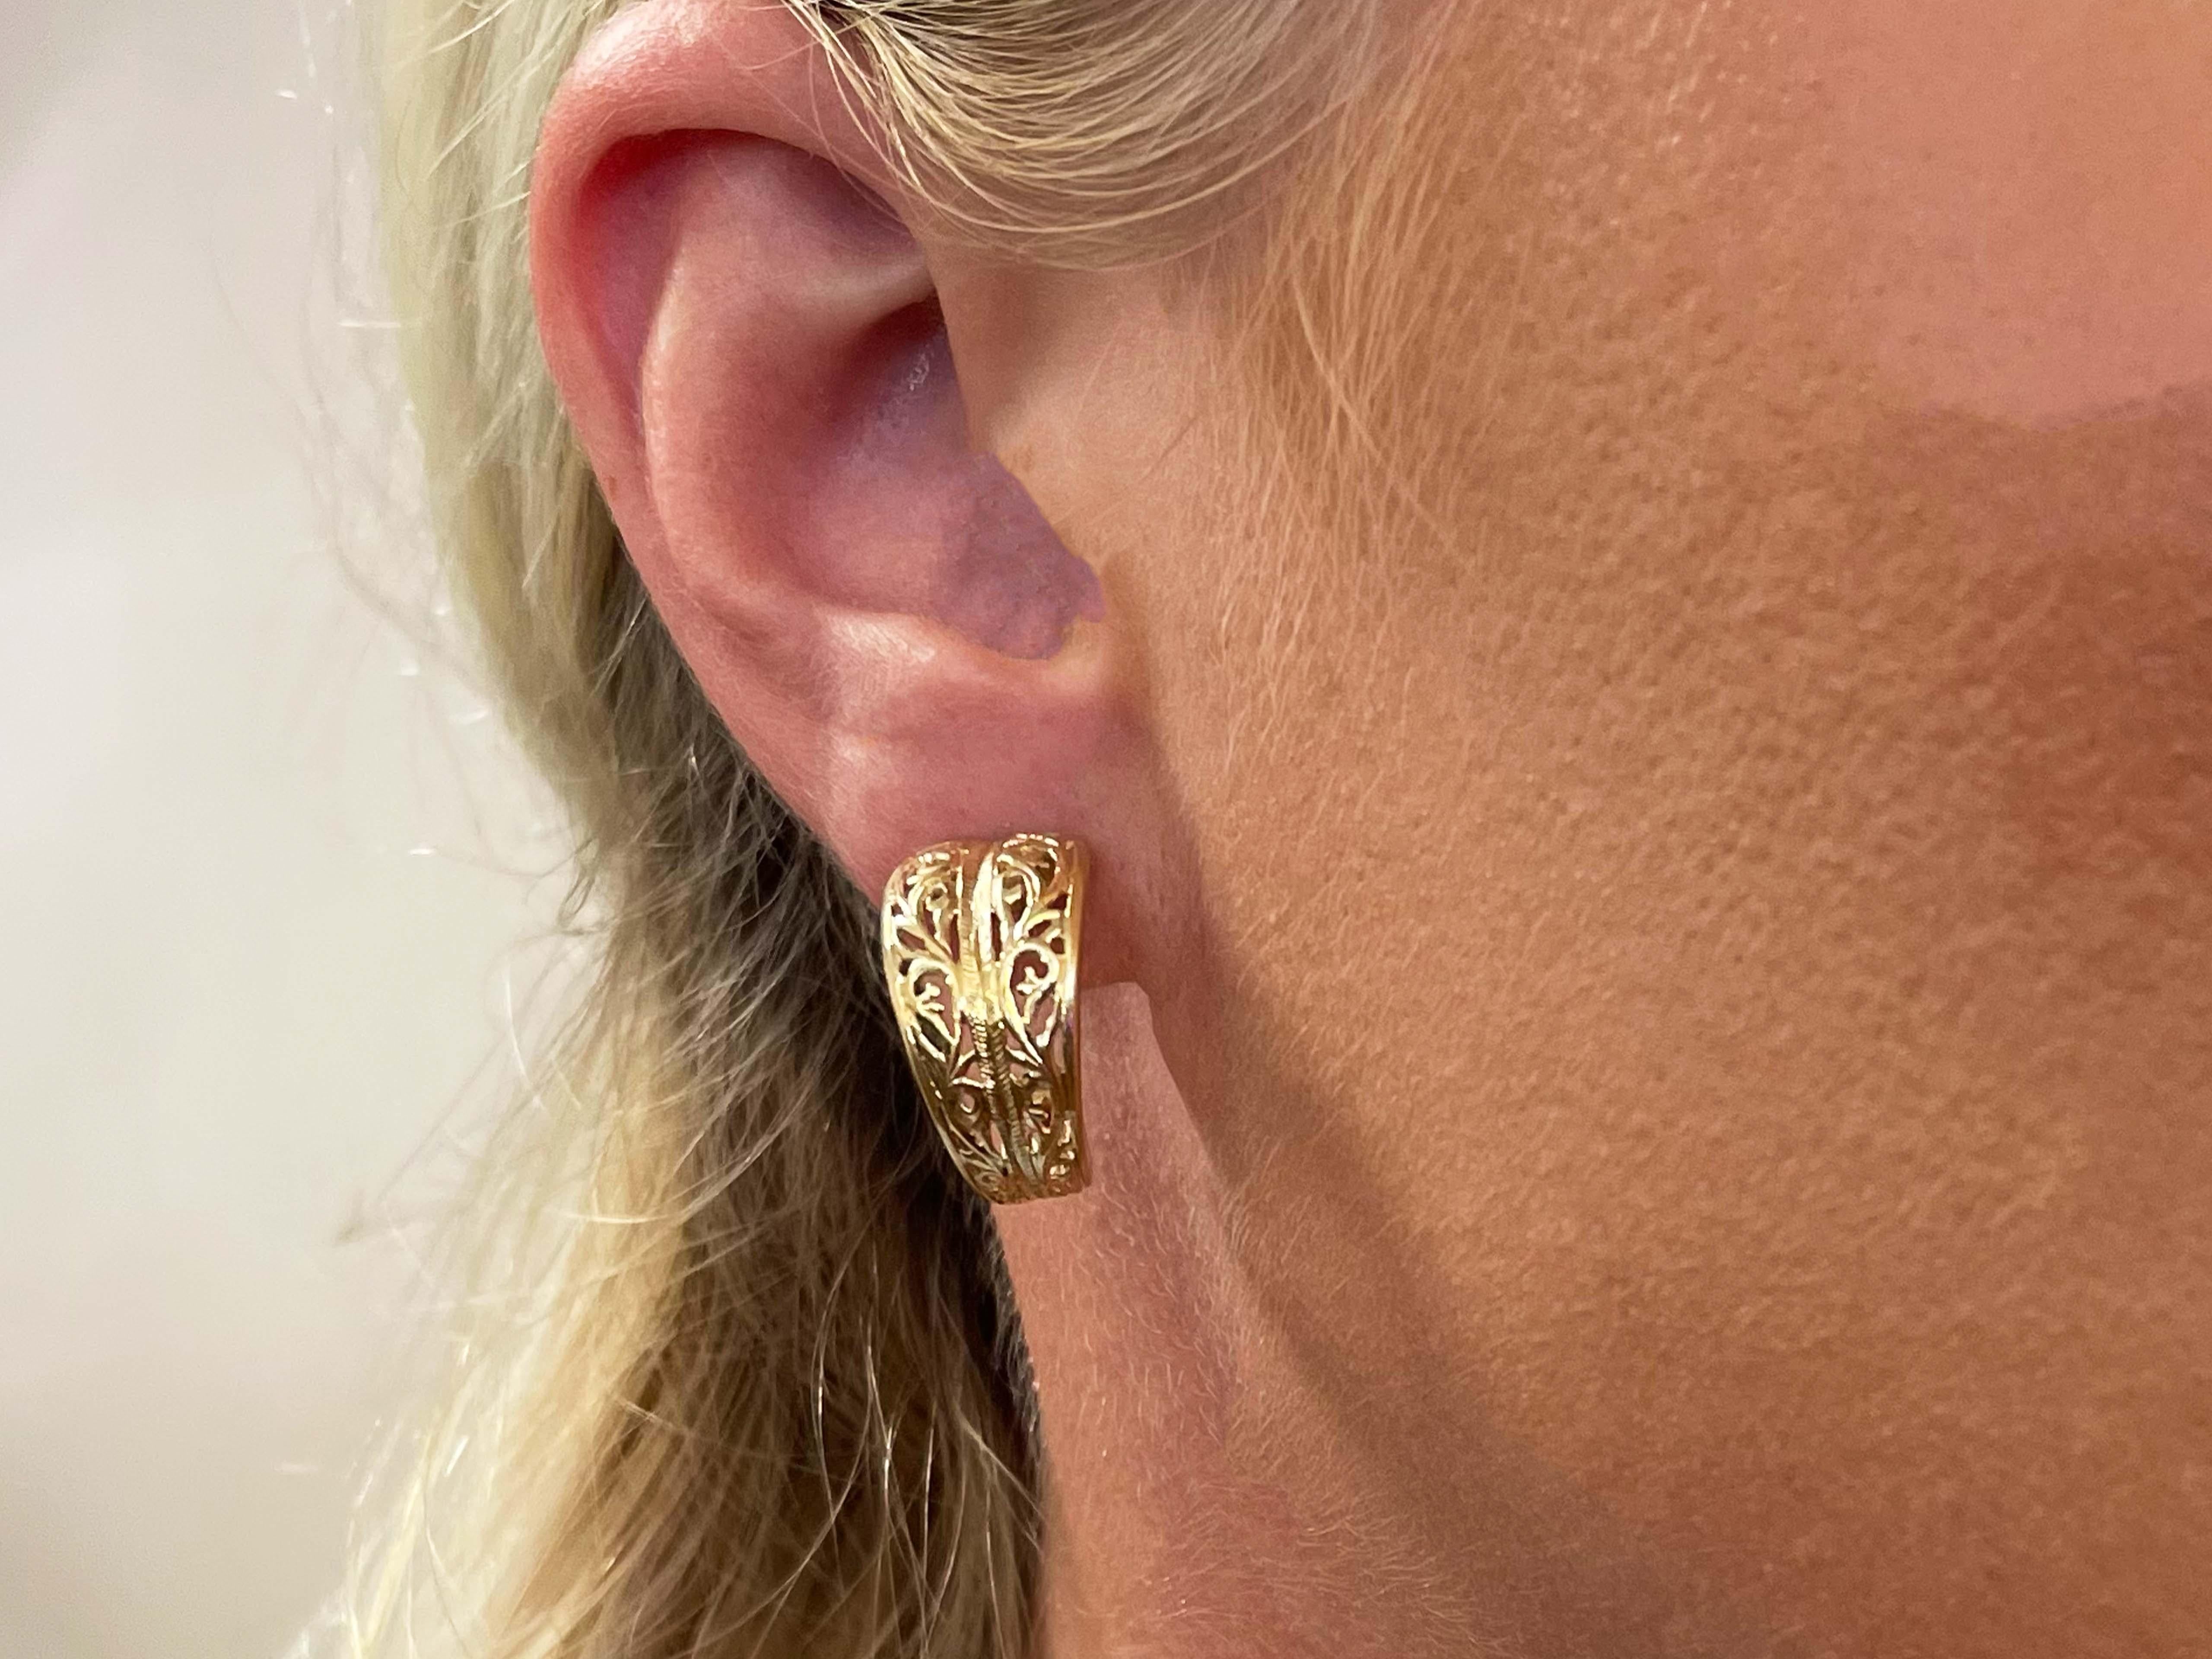 Earrings Specifications:

Designer: Ming's

Metal: 14K Yellow Gold

Total Weight: 5.0 Grams

Hoop Width: 11.45 mm

Hoop Diameter: 20.35 mm

Stamped: 